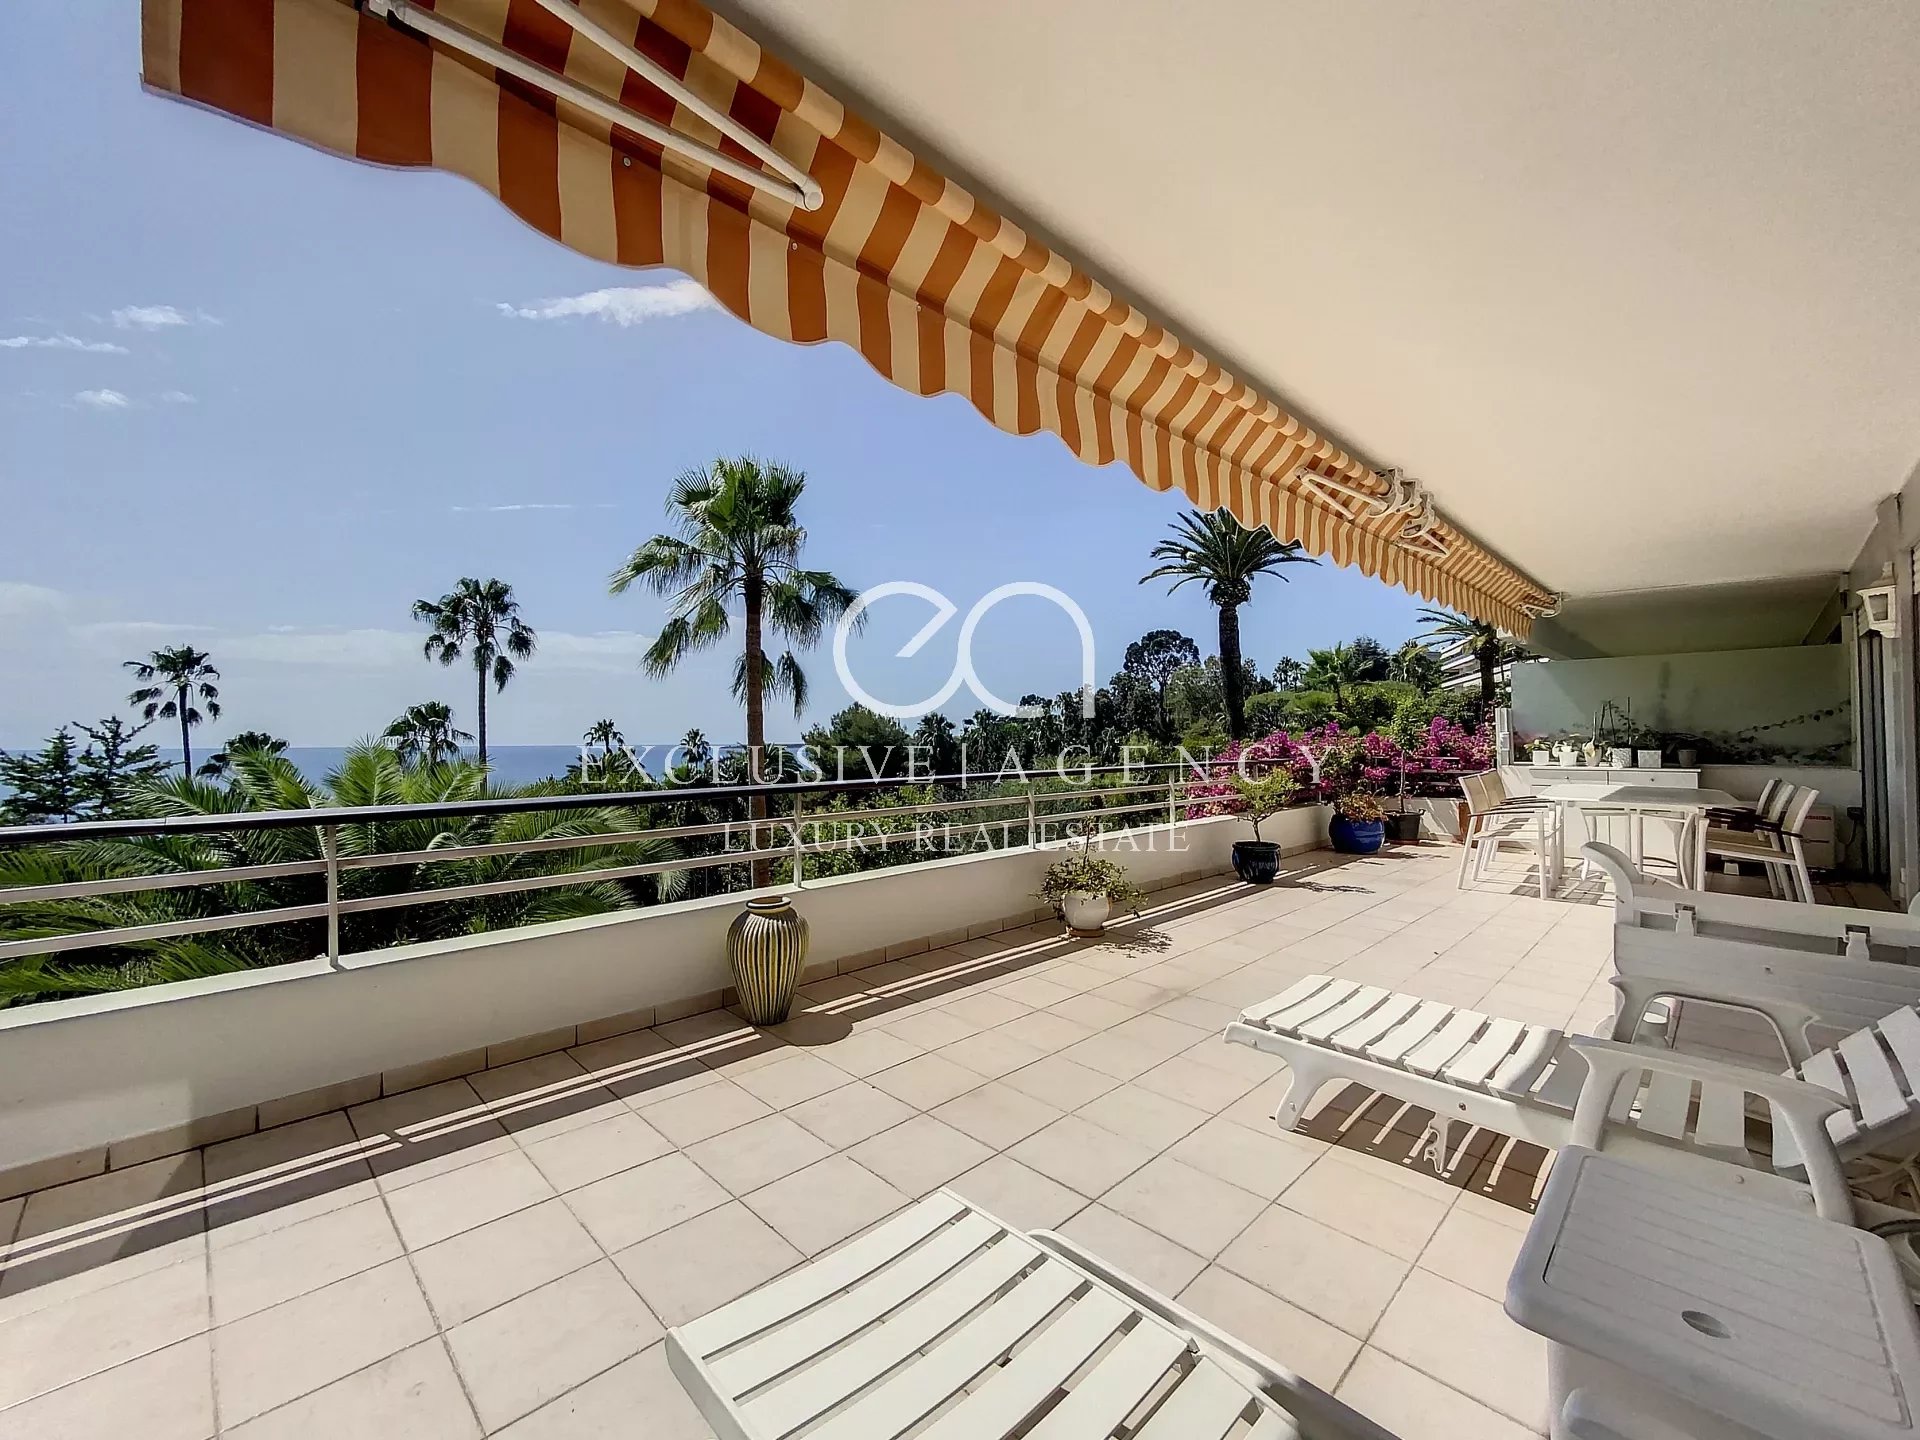 A vendre Cannes Eden appartement 4 pièces 107m² vue mer panoramique